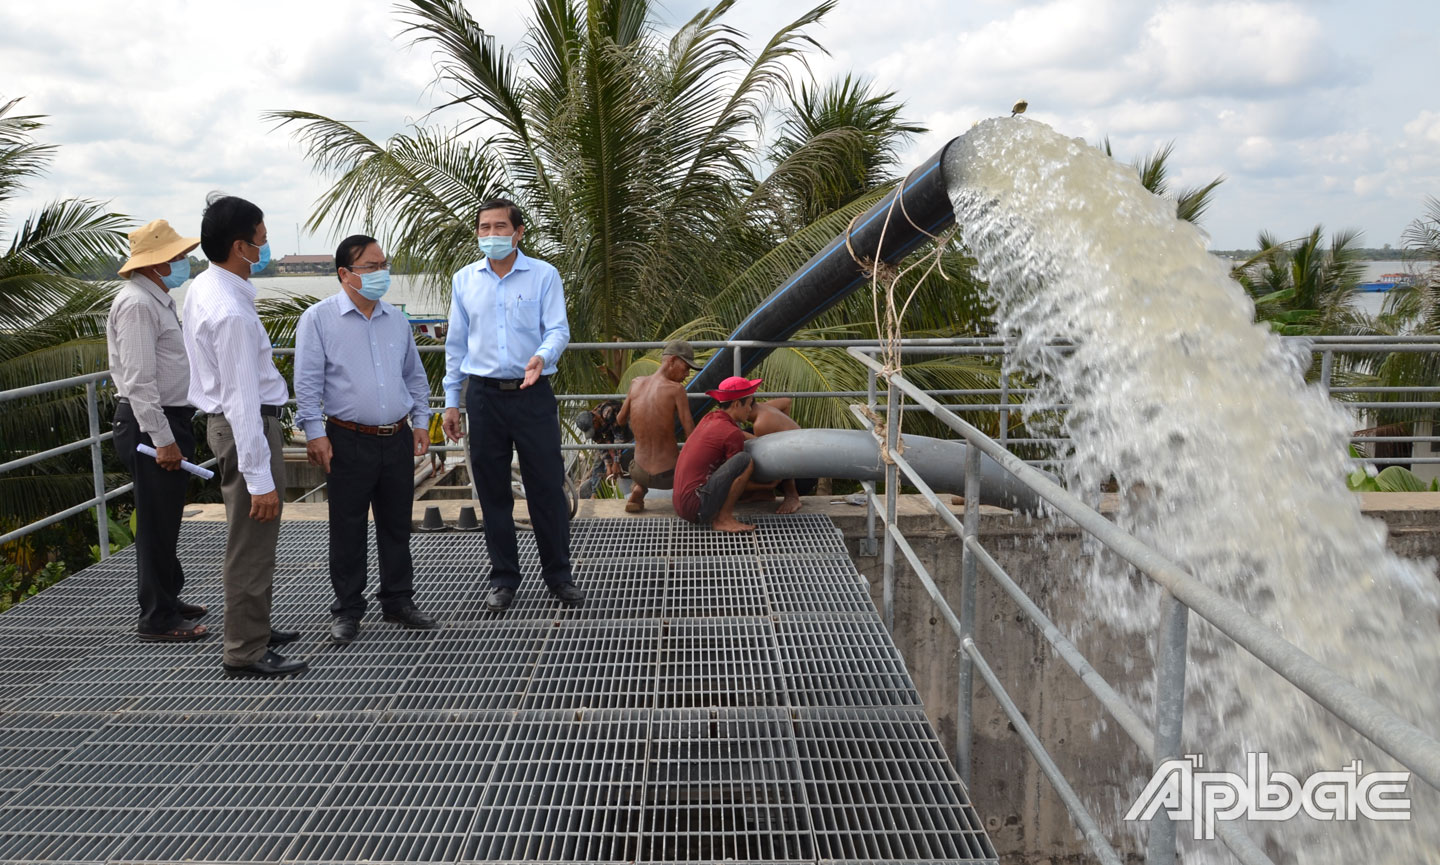 Lãnh đạo tỉnh kiểm tra việc việc vận chuyển nước ngọt về Nhà máy nước BOO Đồng Tâm để phục vụ việc sản xuất nước sinh hoạt cung cấp cho nhân dân các huyện, thị phía Đông.